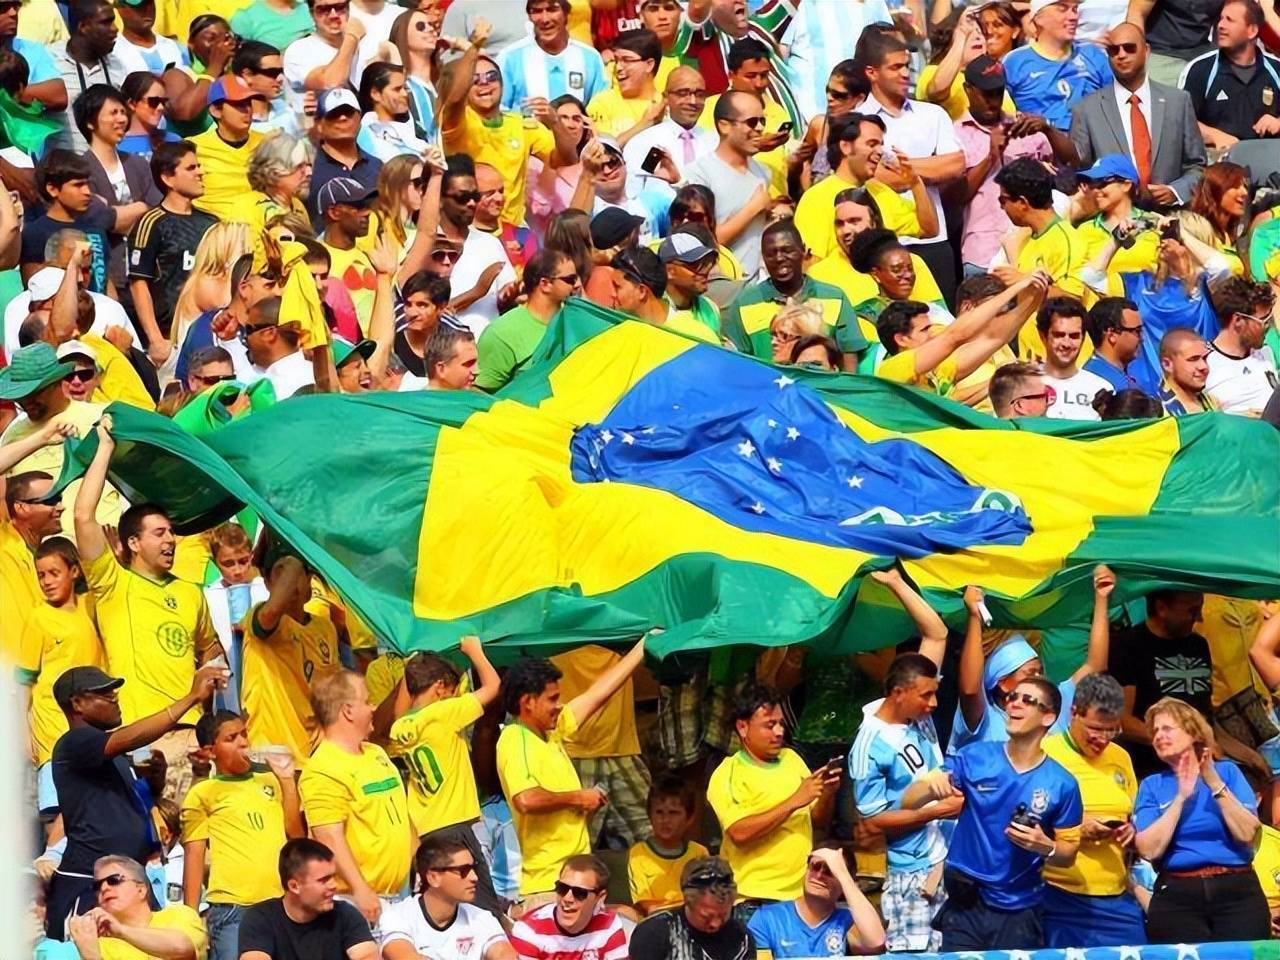 巴西球迷买走7成球票 韩媒急呼以一挡百:200人制造2万人声势